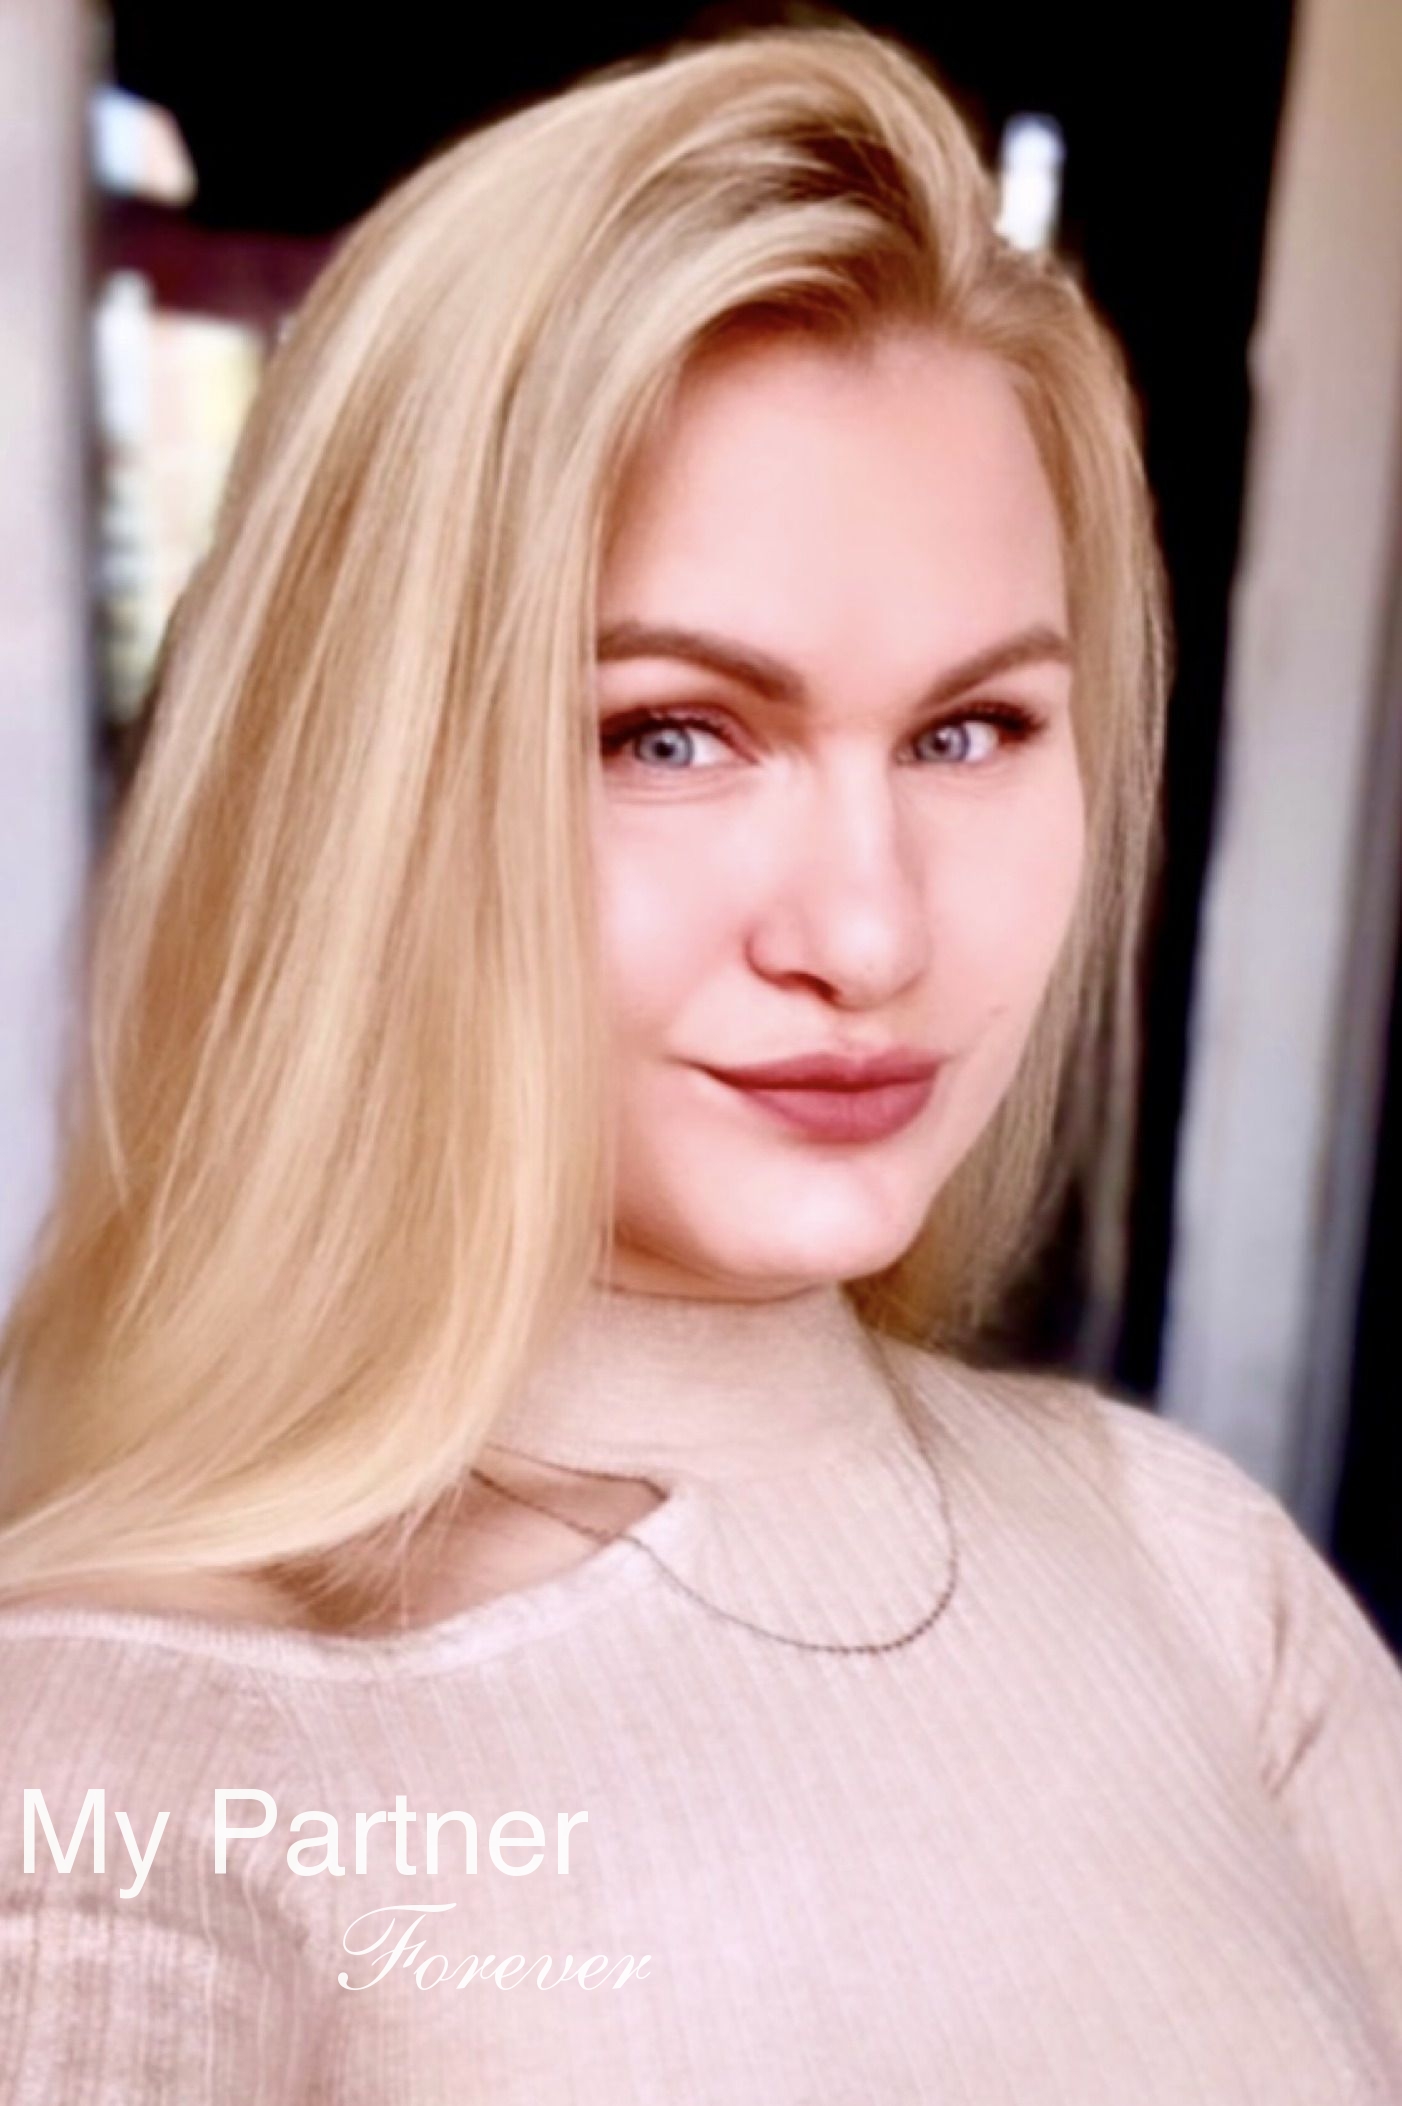 Beautiful Woman from Belarus - Viktoriya from Mosty, Belarus